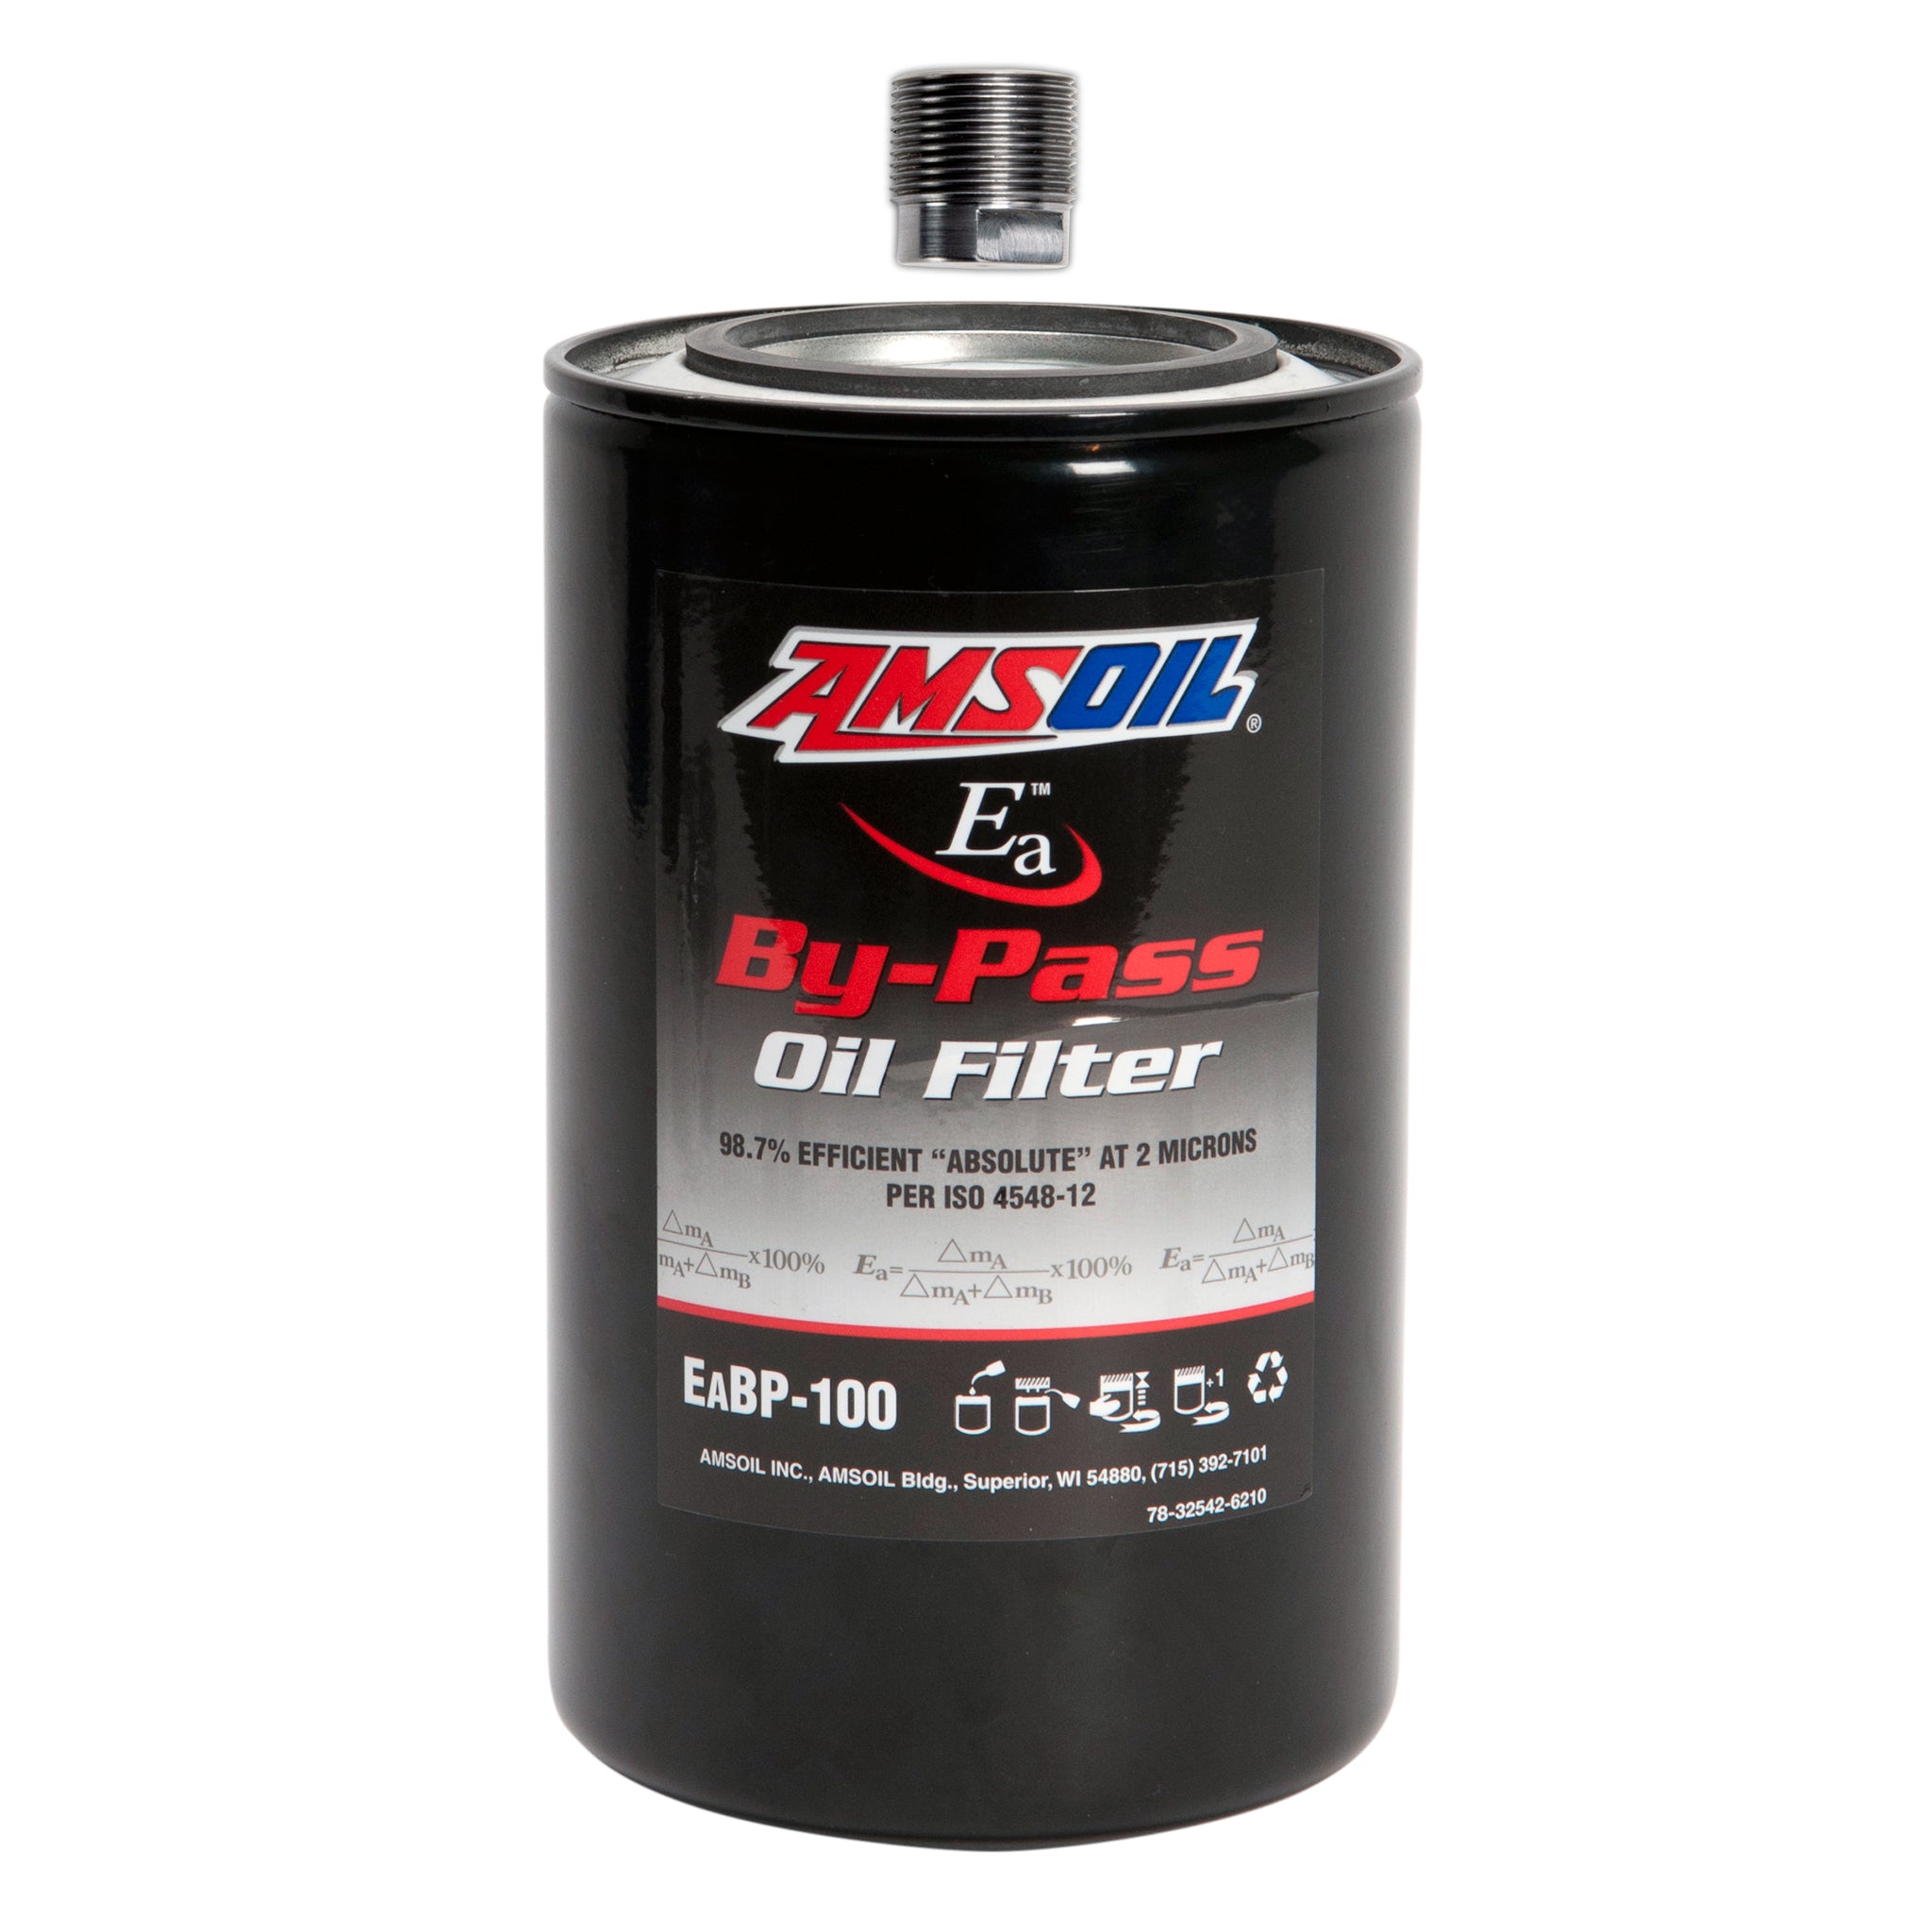 Bullet Proof Diesel Amsoil Bypass Oil Filter Upgrade Kit